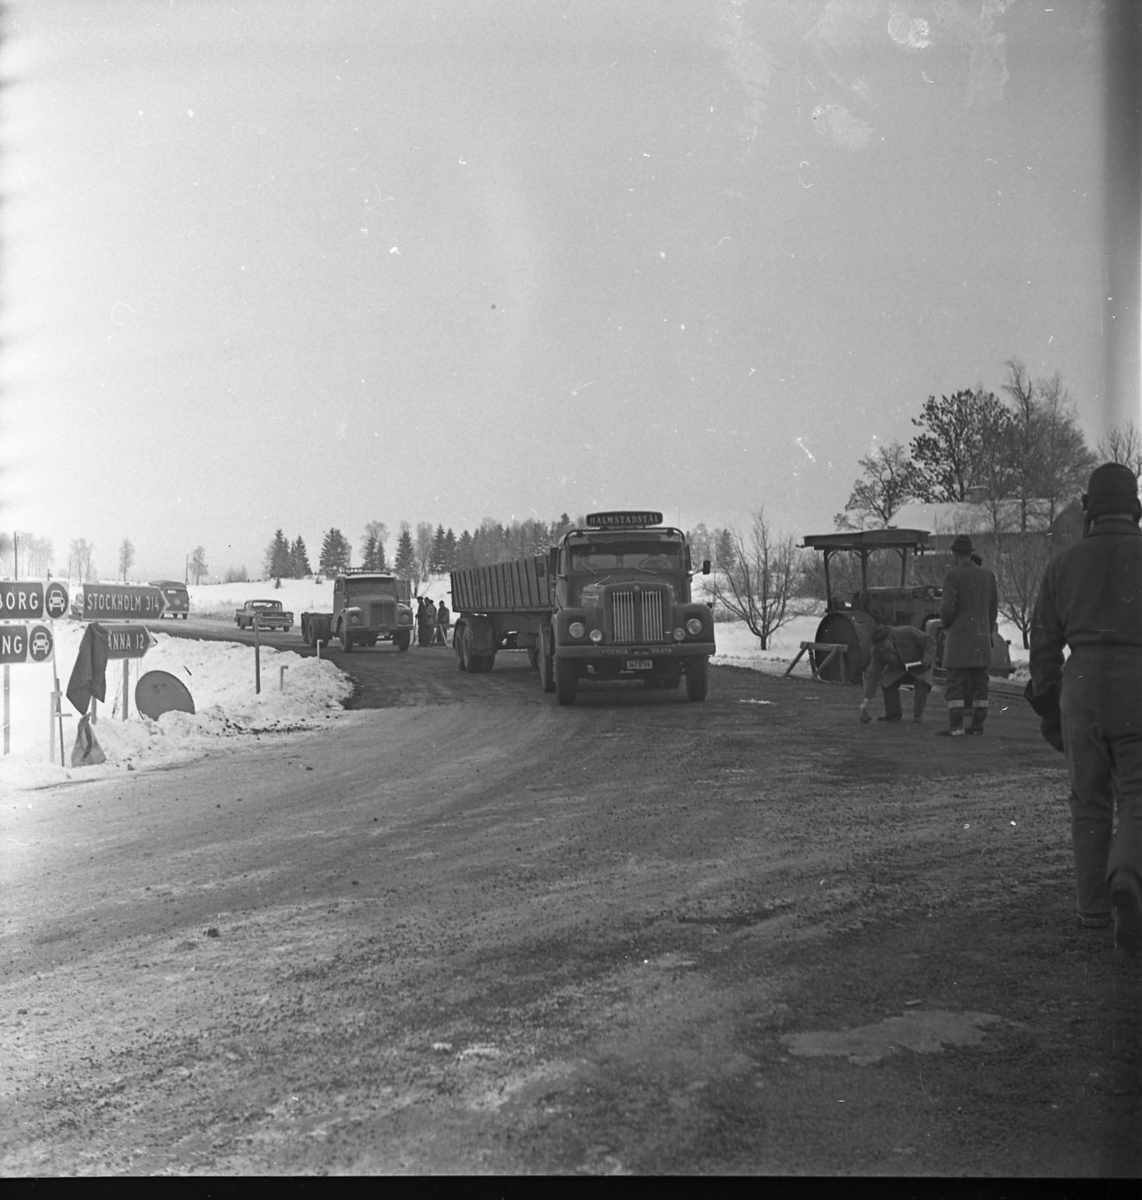 Anslutningsväg under pågående bygge av motorväg E4. Fotot är taget vid Ölmstad Mellangård. Vägen åt höger går till Skärstad.